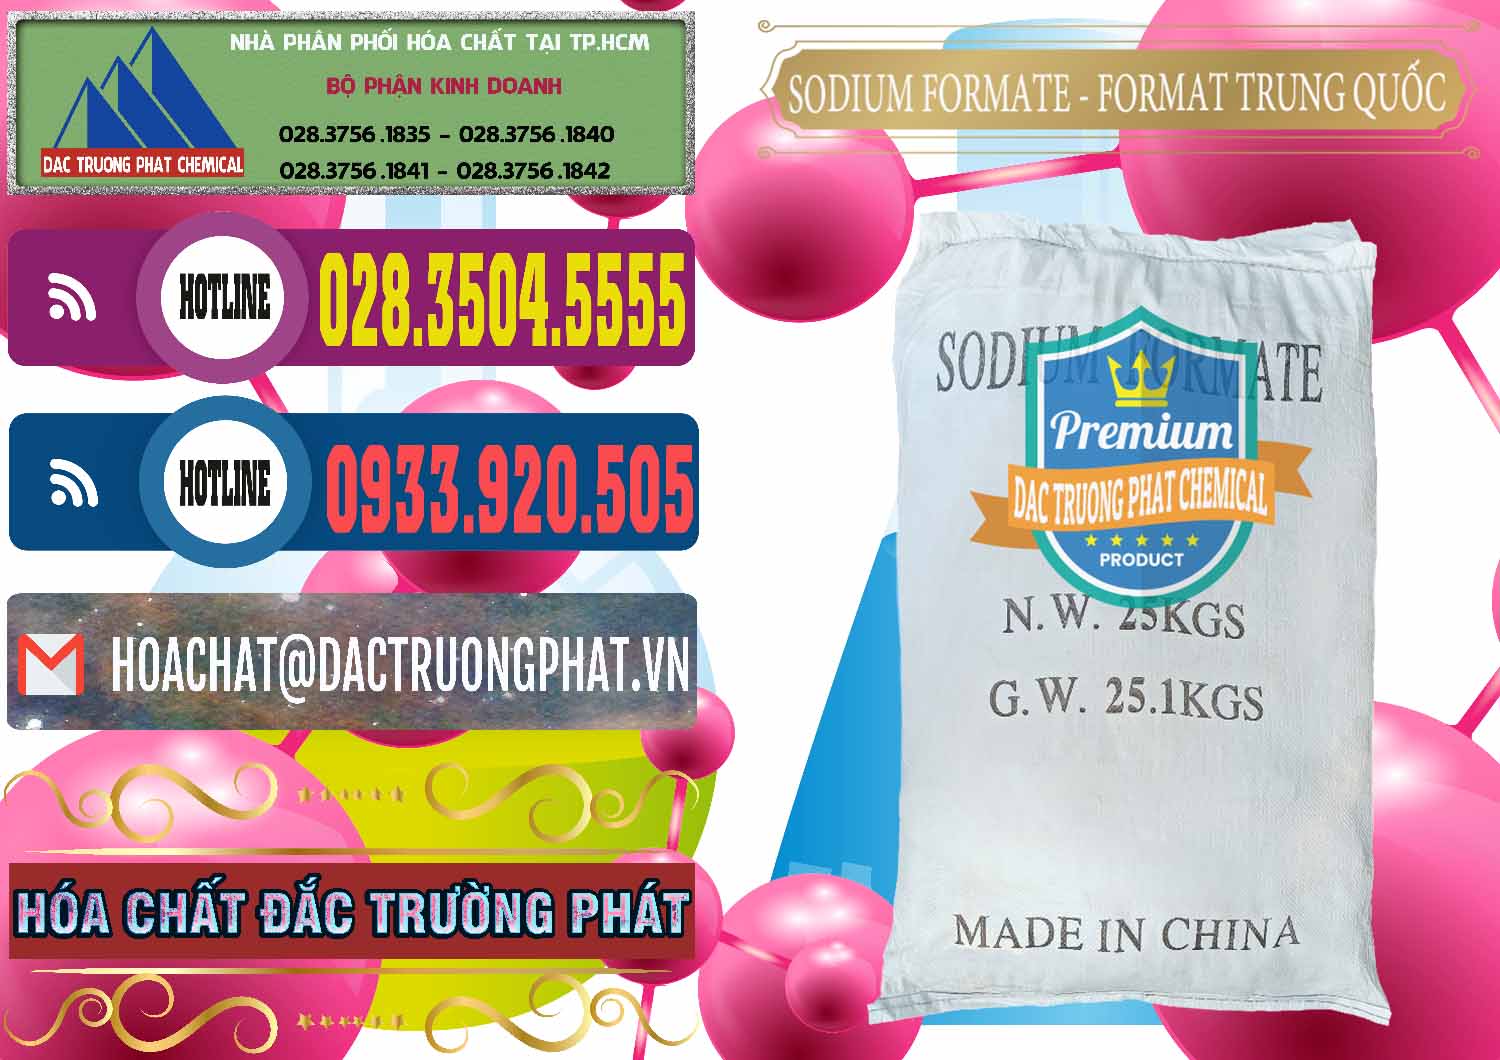 Cty bán và cung cấp Sodium Formate - Natri Format Trung Quốc China - 0142 - Đơn vị cung cấp & nhập khẩu hóa chất tại TP.HCM - muabanhoachat.com.vn